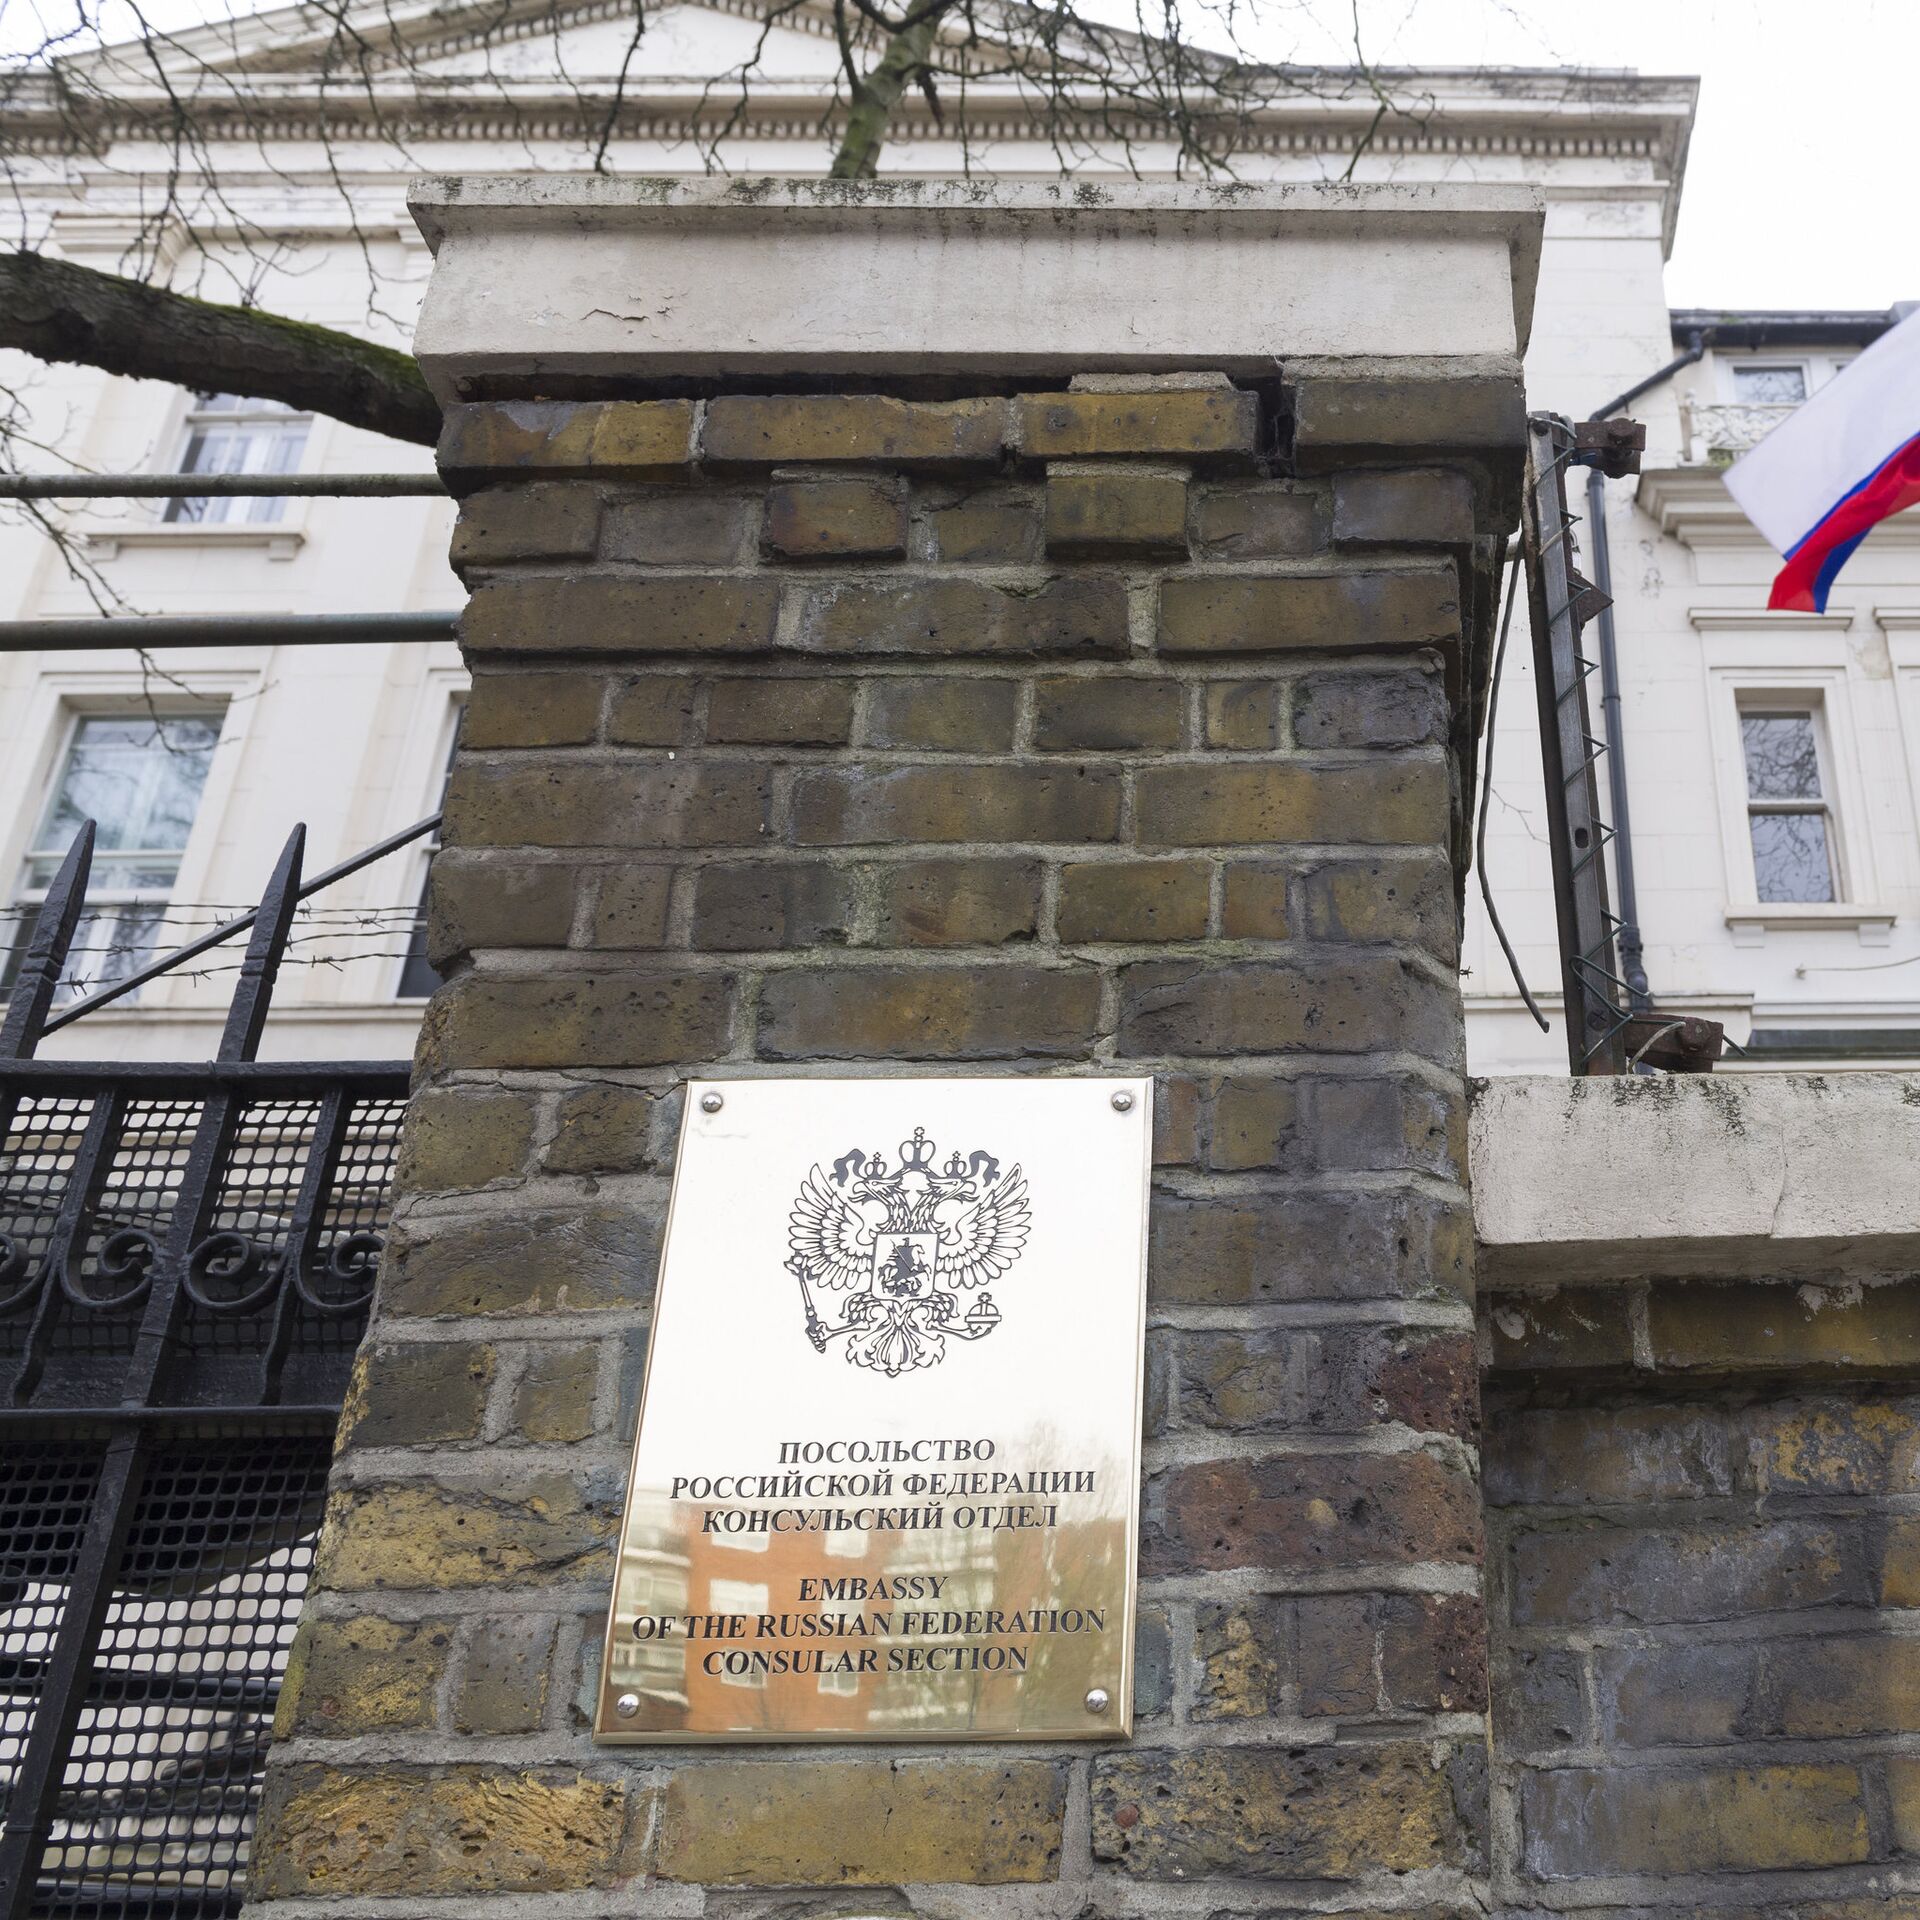 Посольство в лондоне. Русское посольство в Британии. Посольство РФ В Англии. Здание посольства России в Лондоне. Российское посольство в Великобритании.